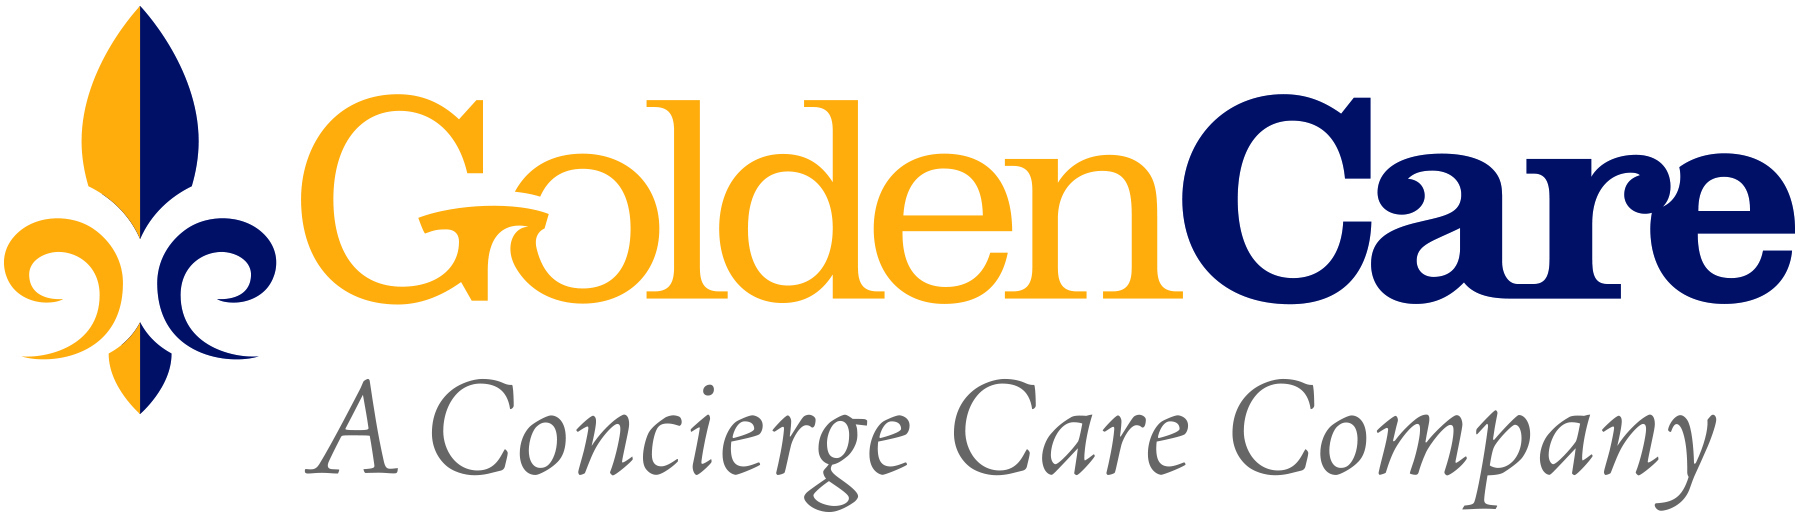 GoldenCare_logo_new.jpg